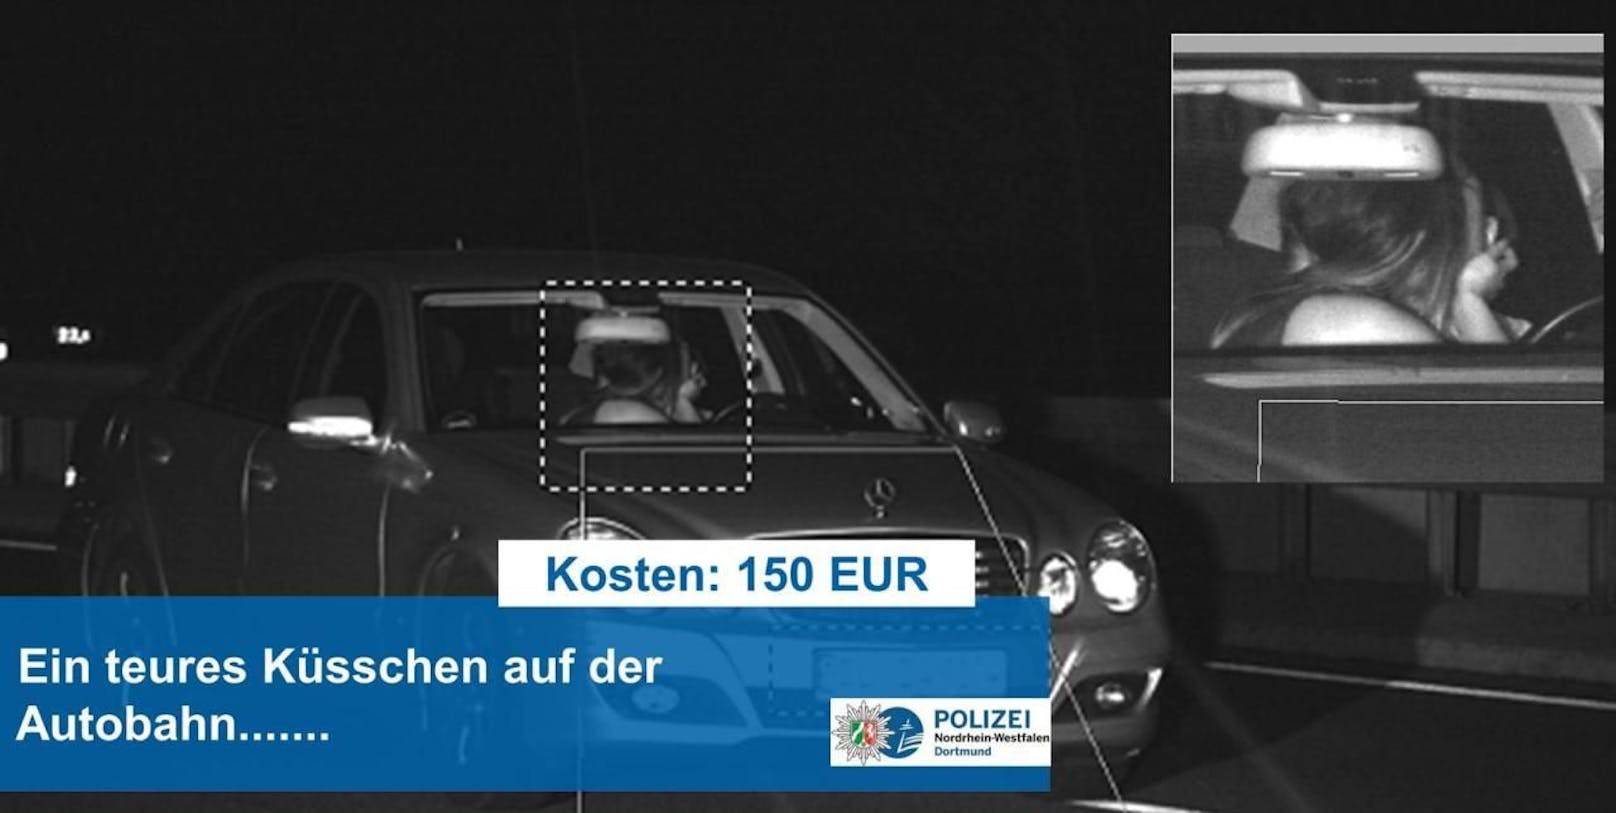 Das Küsschen auf der Autobahn kostet 150 Euro